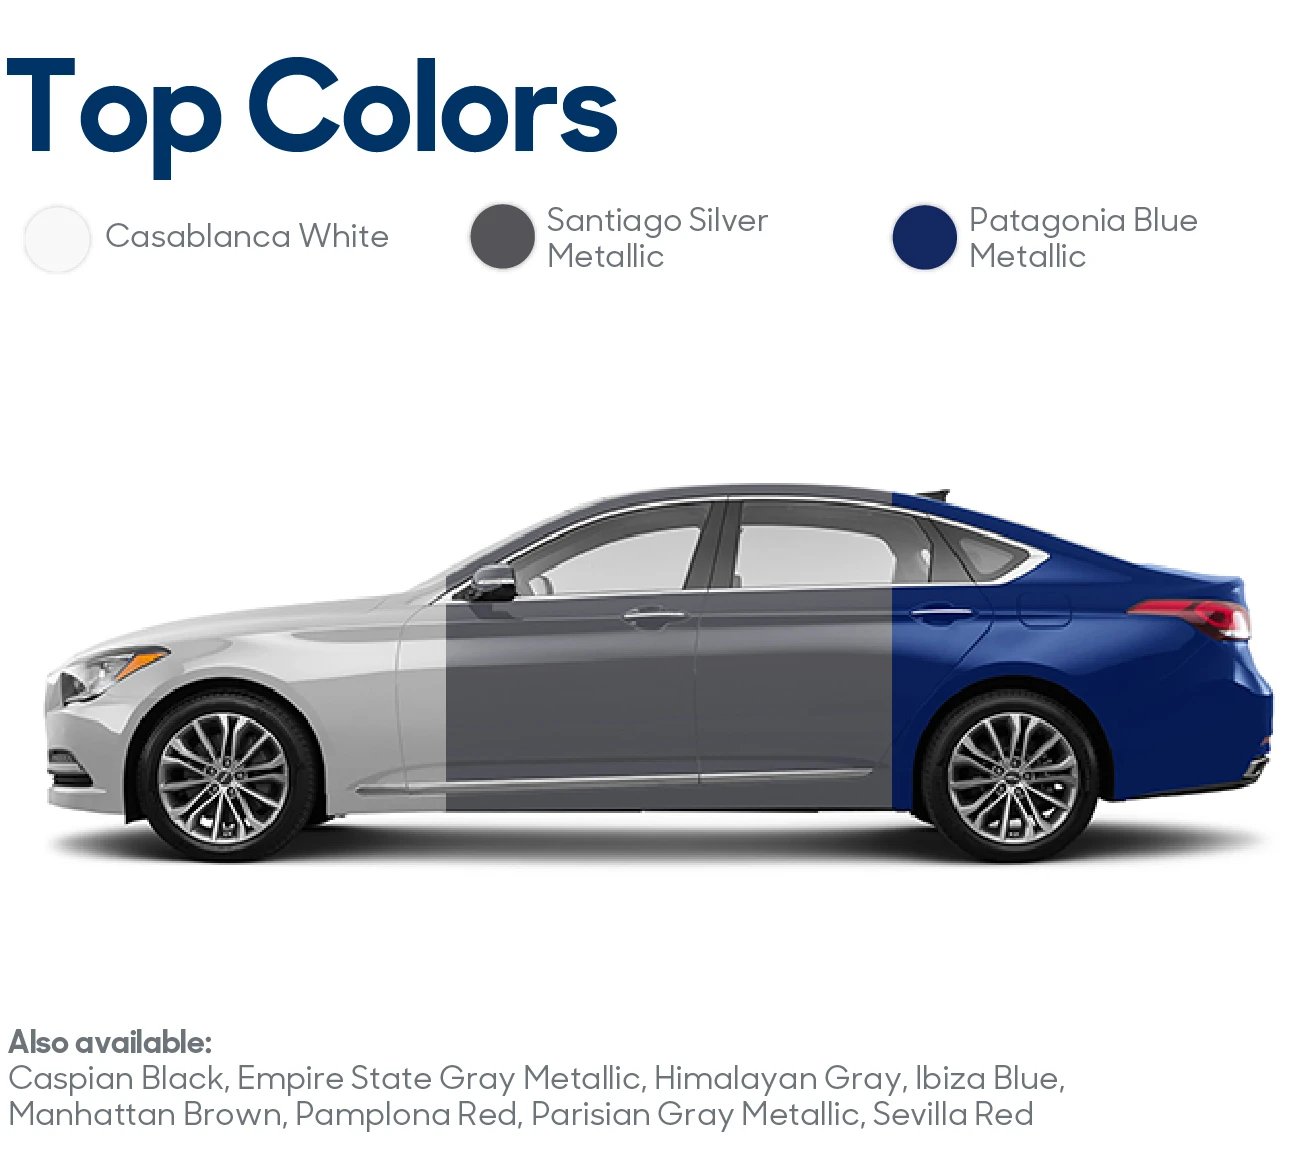 2017 Genesis G80 Review: Top Colors | CarMax